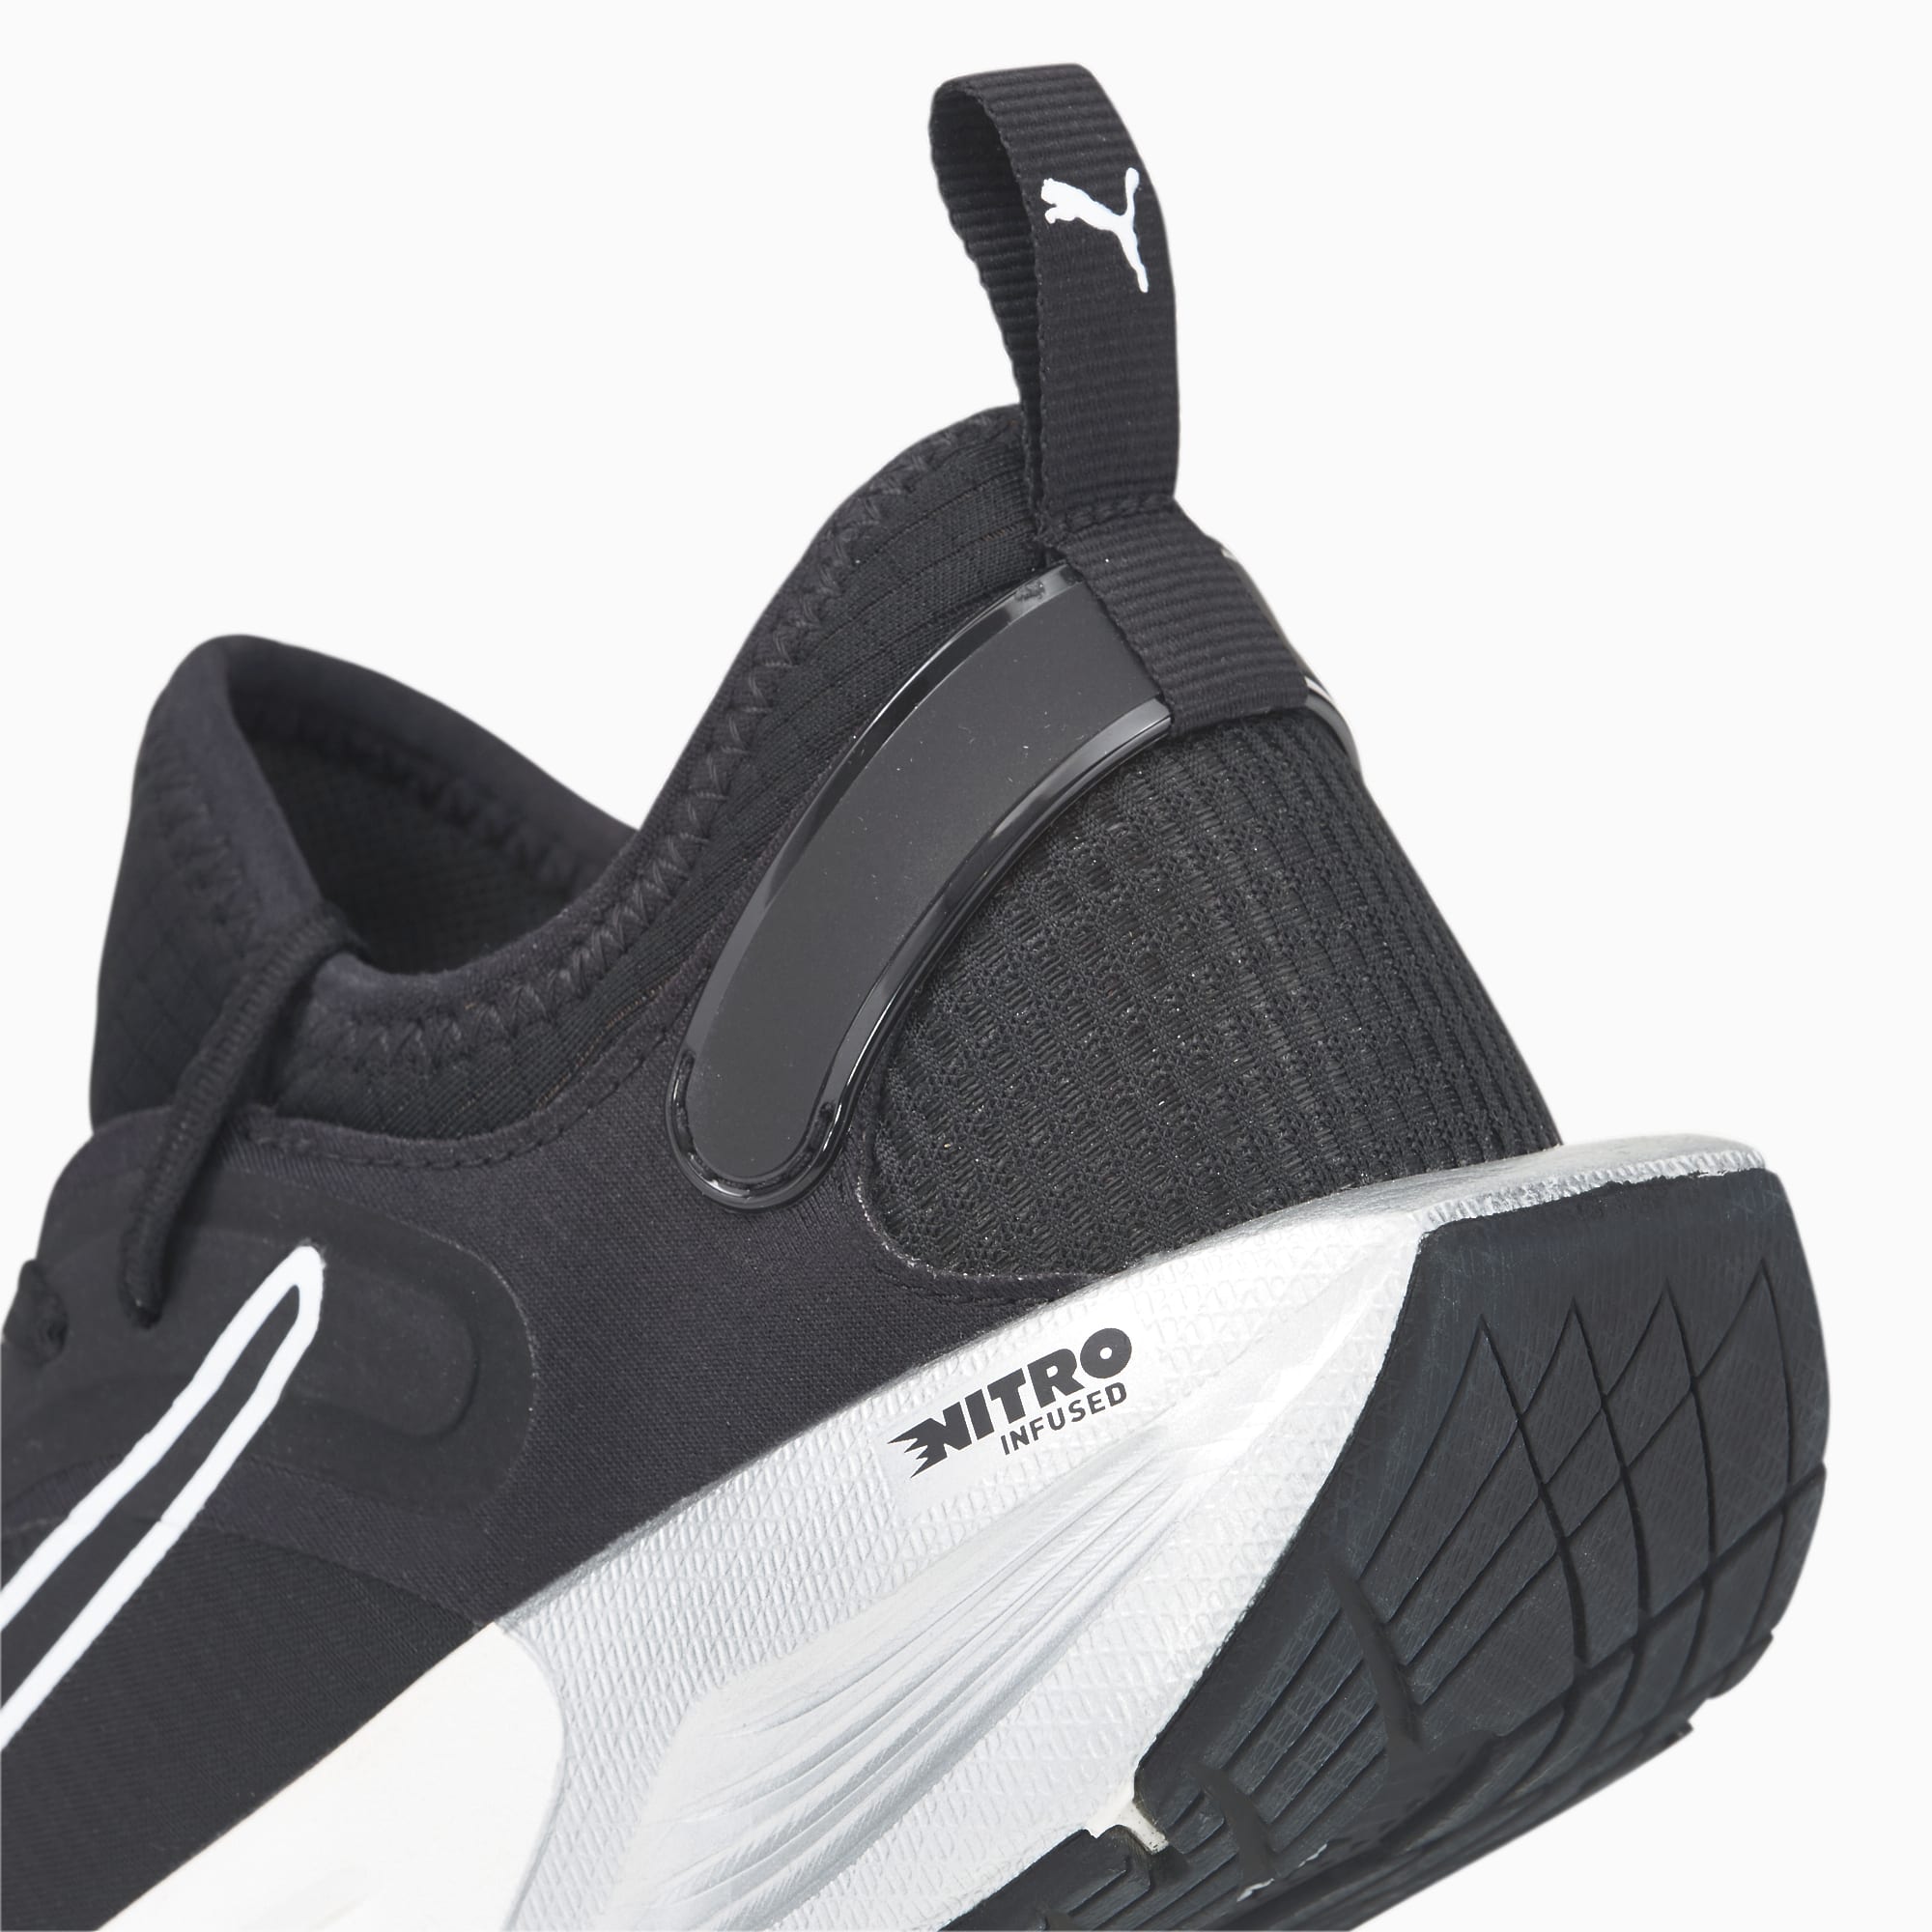 PUMA Chaussures De Fitness Et Training PWR XX NITRO Femme, Noir/Blanc/Argent